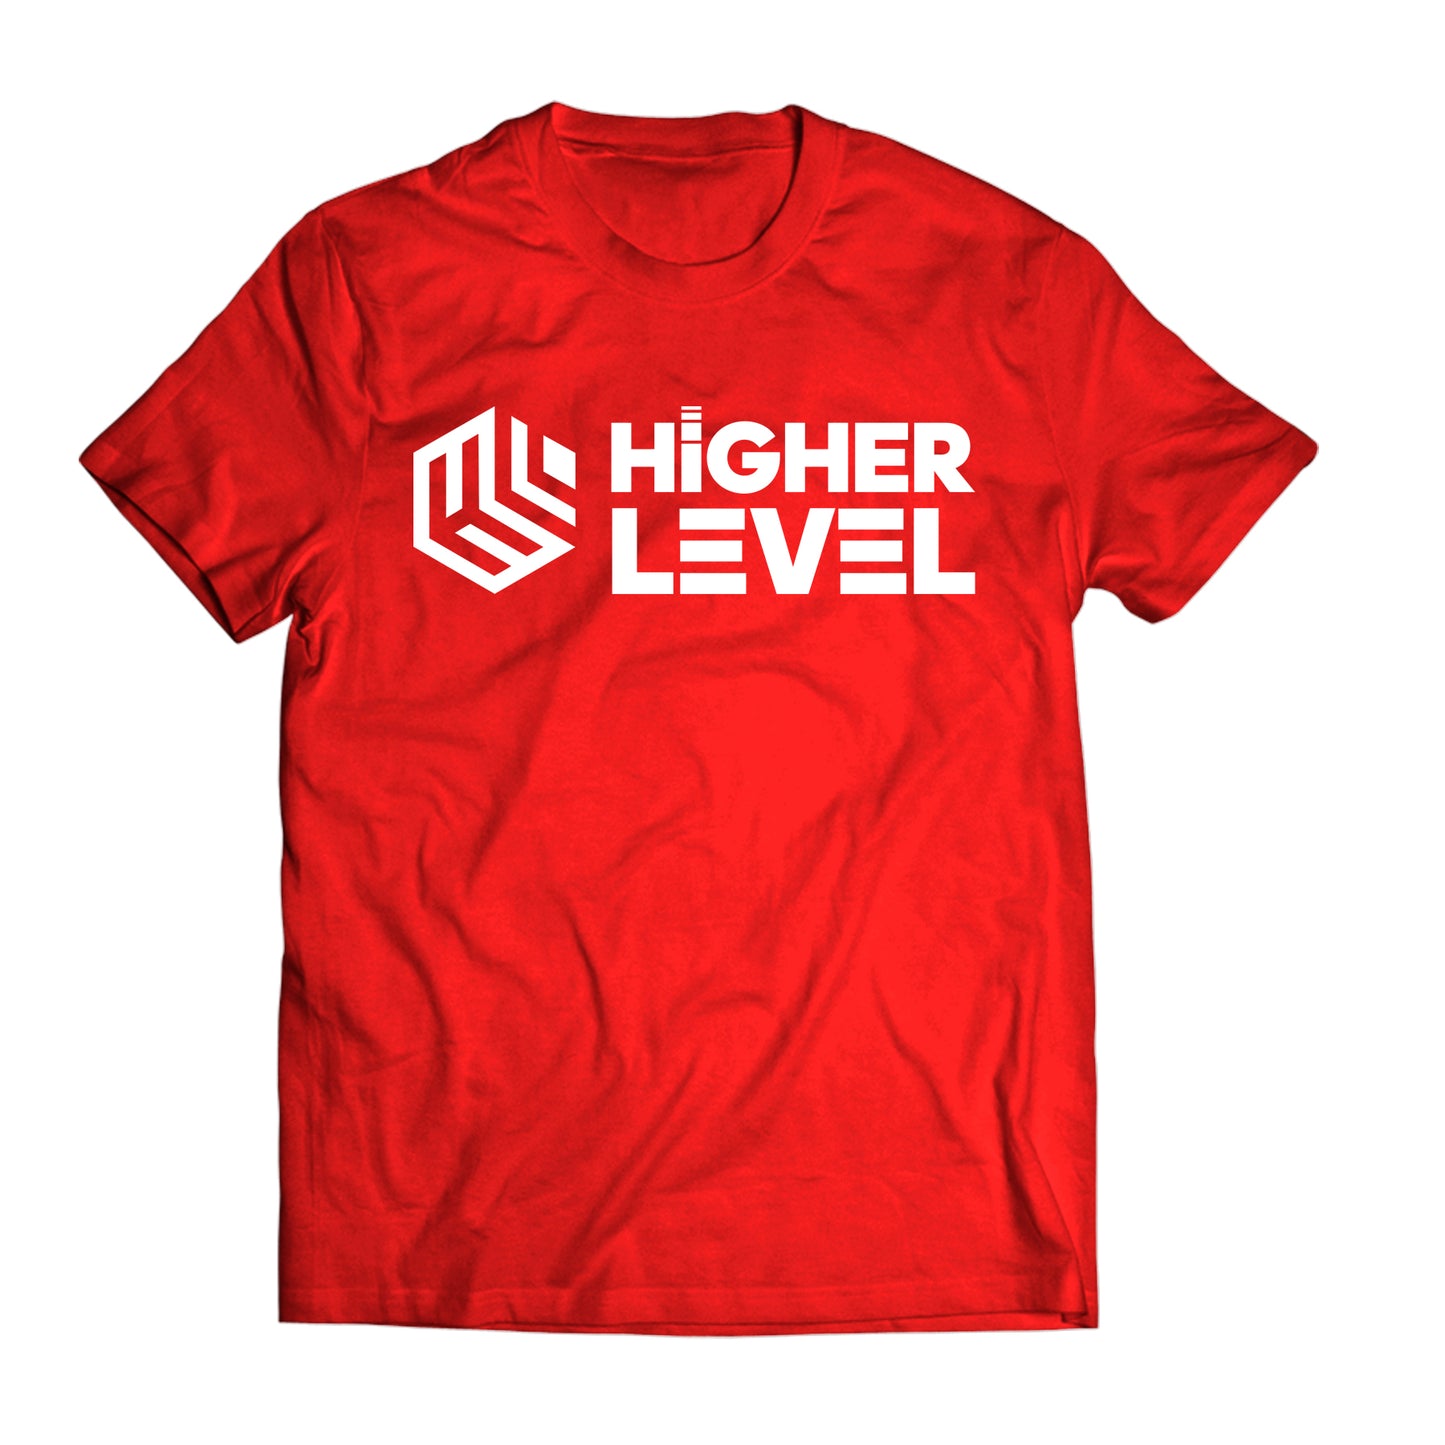 Higher Level T-Shirt